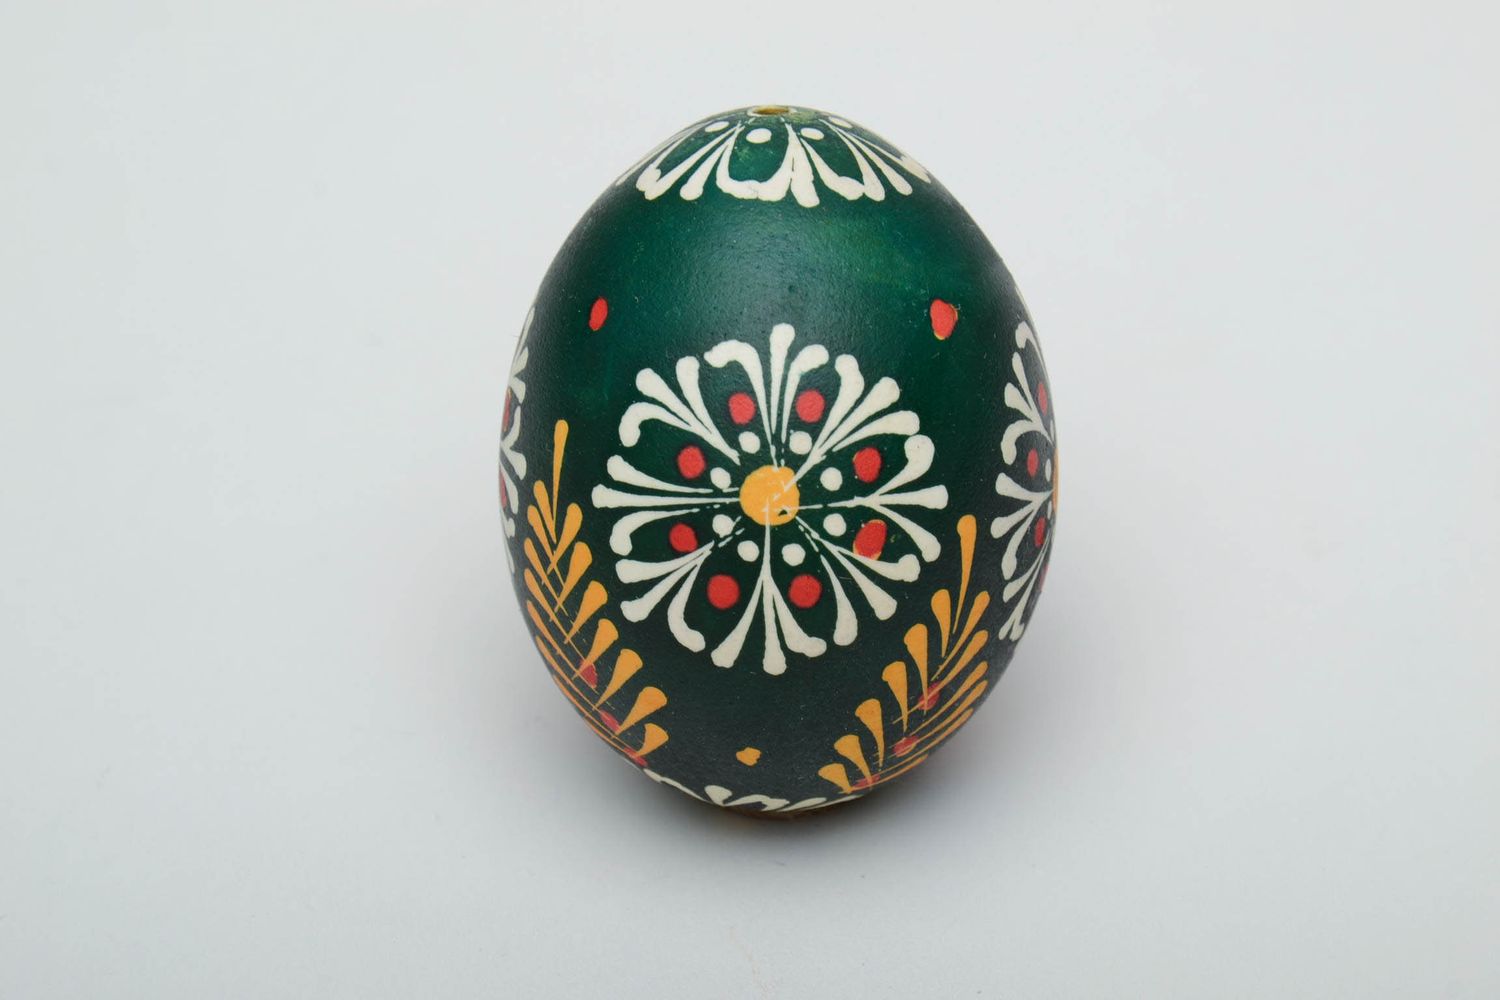 L'uovo pasquale fatto a mano pysanka dipinta a mano ucraina idee regalo foto 2